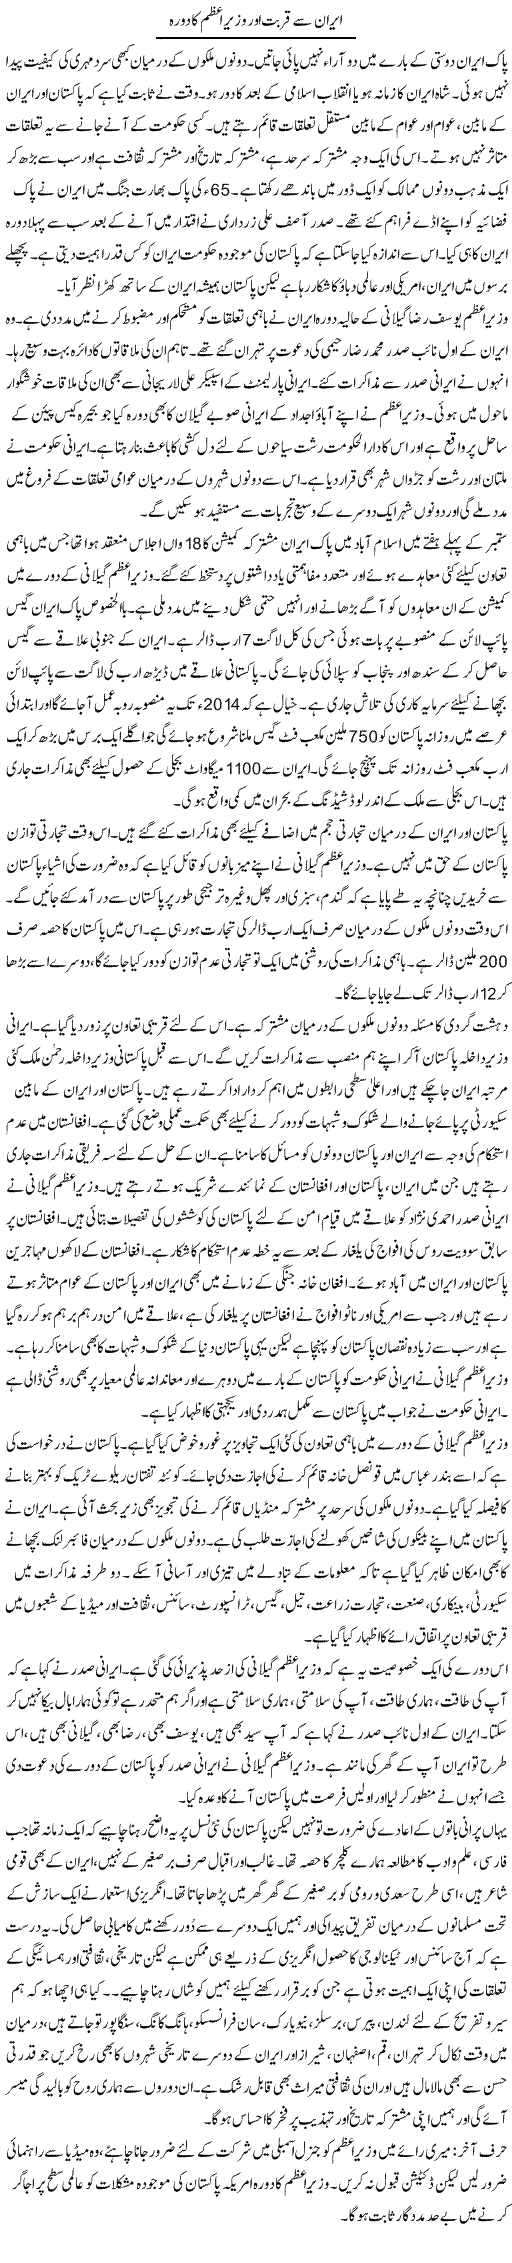 Pakistan Iran Express Column Asadullah Ghalib 17 September 2011